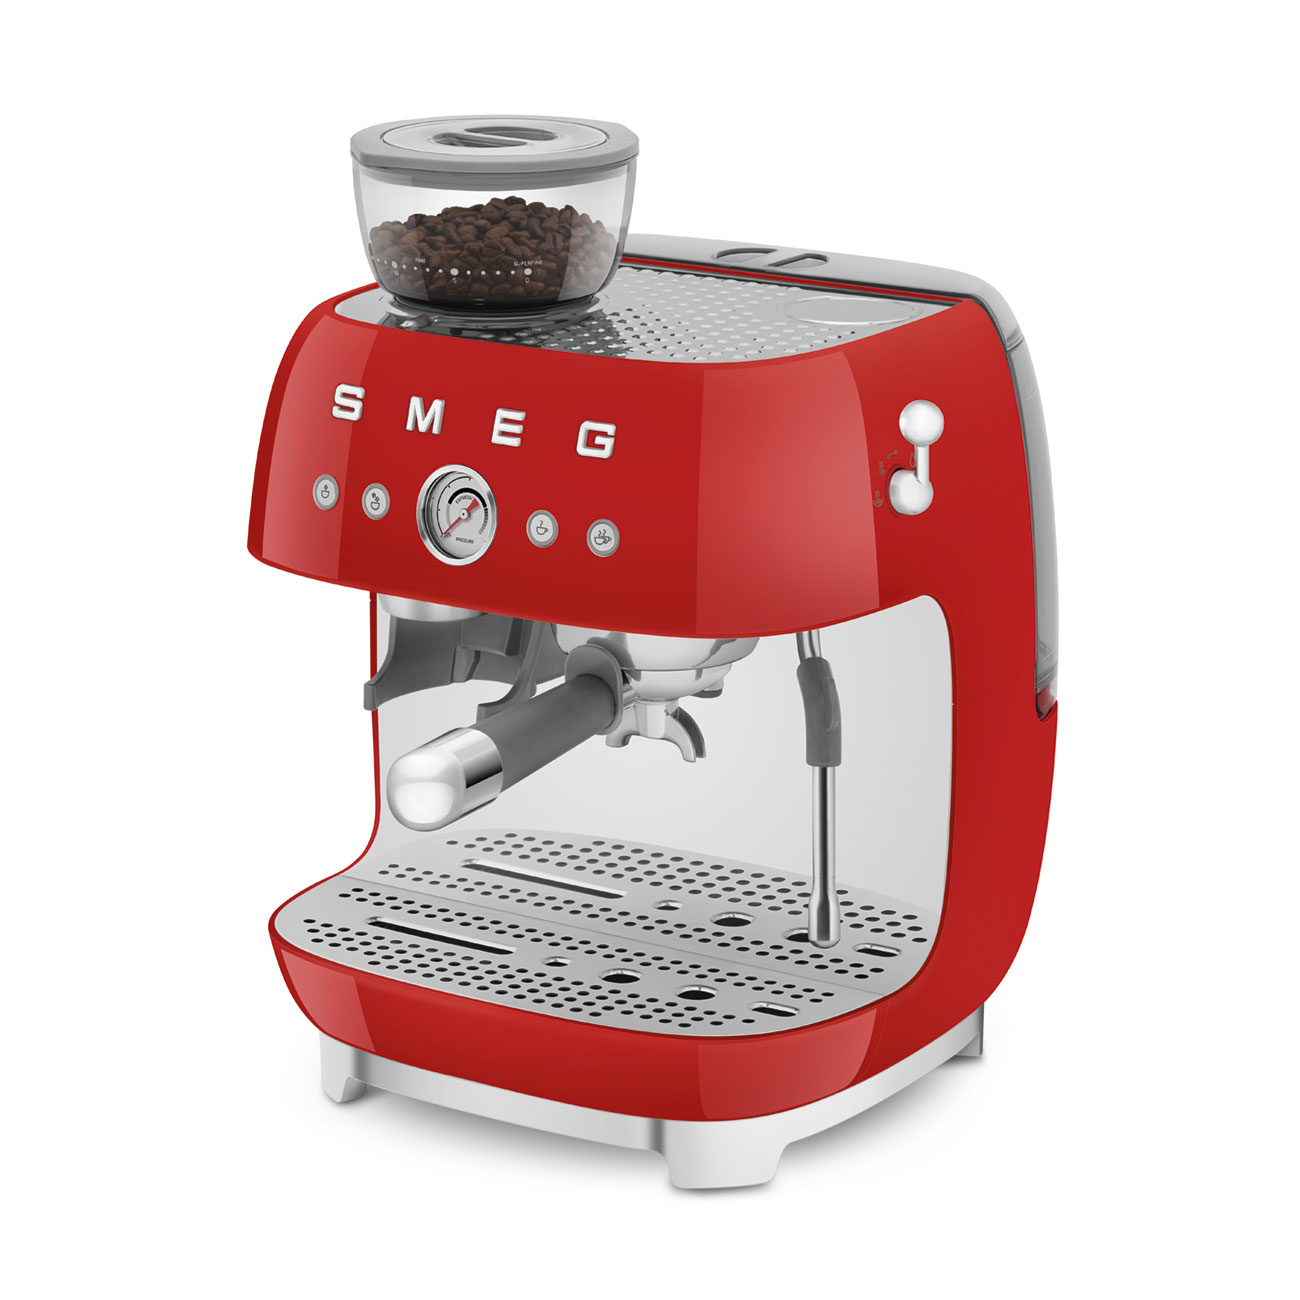 Smeg Rouge Machine à café expresso manuelle avec broyeur à grain intégré_9